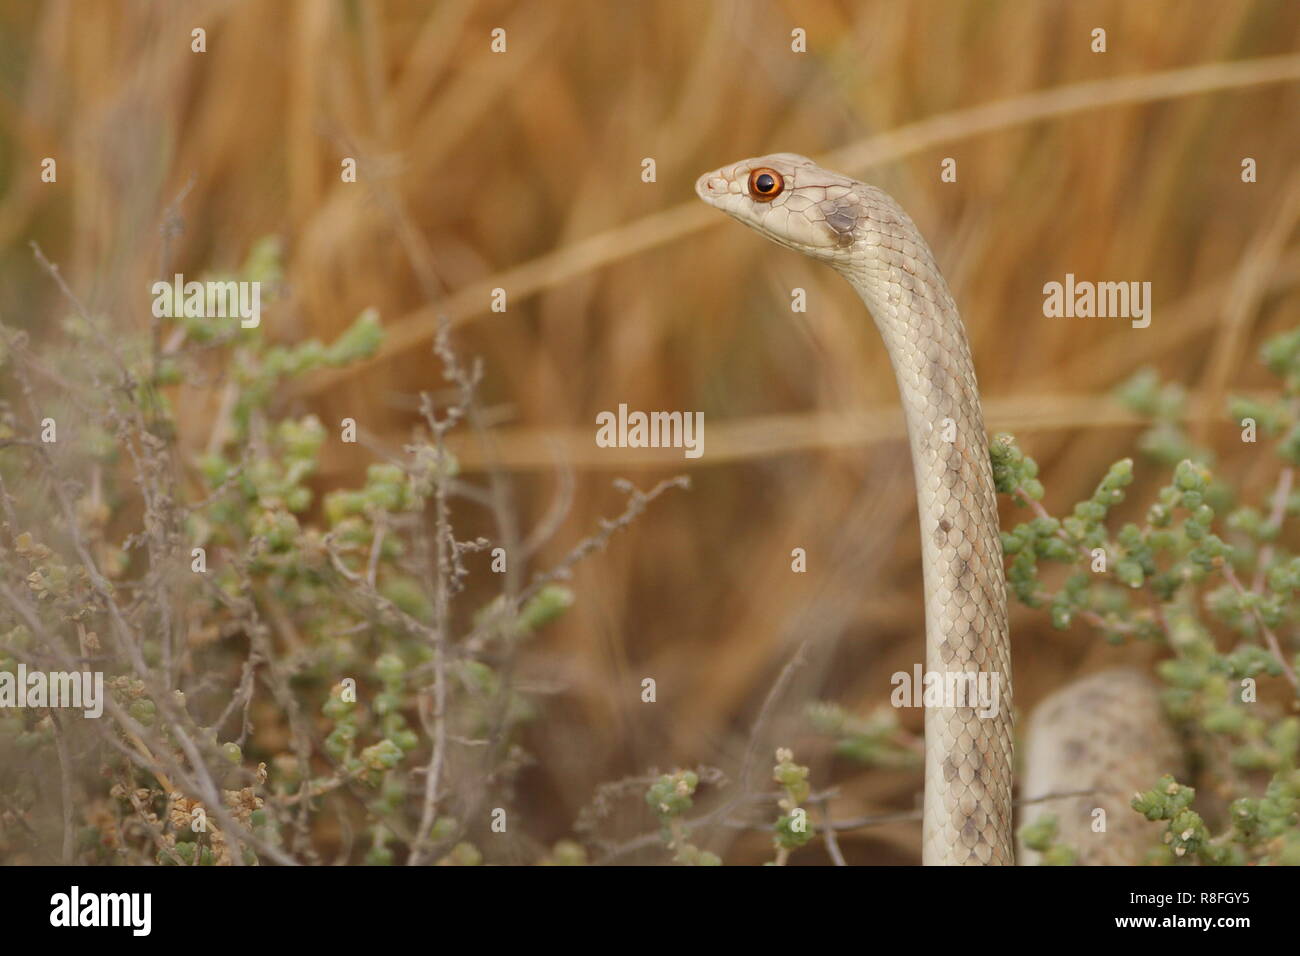 Allarmato Falso cobra Aka incappucciati malpolon .. un comune serpente che vivono nel deserto Arabico Foto Stock